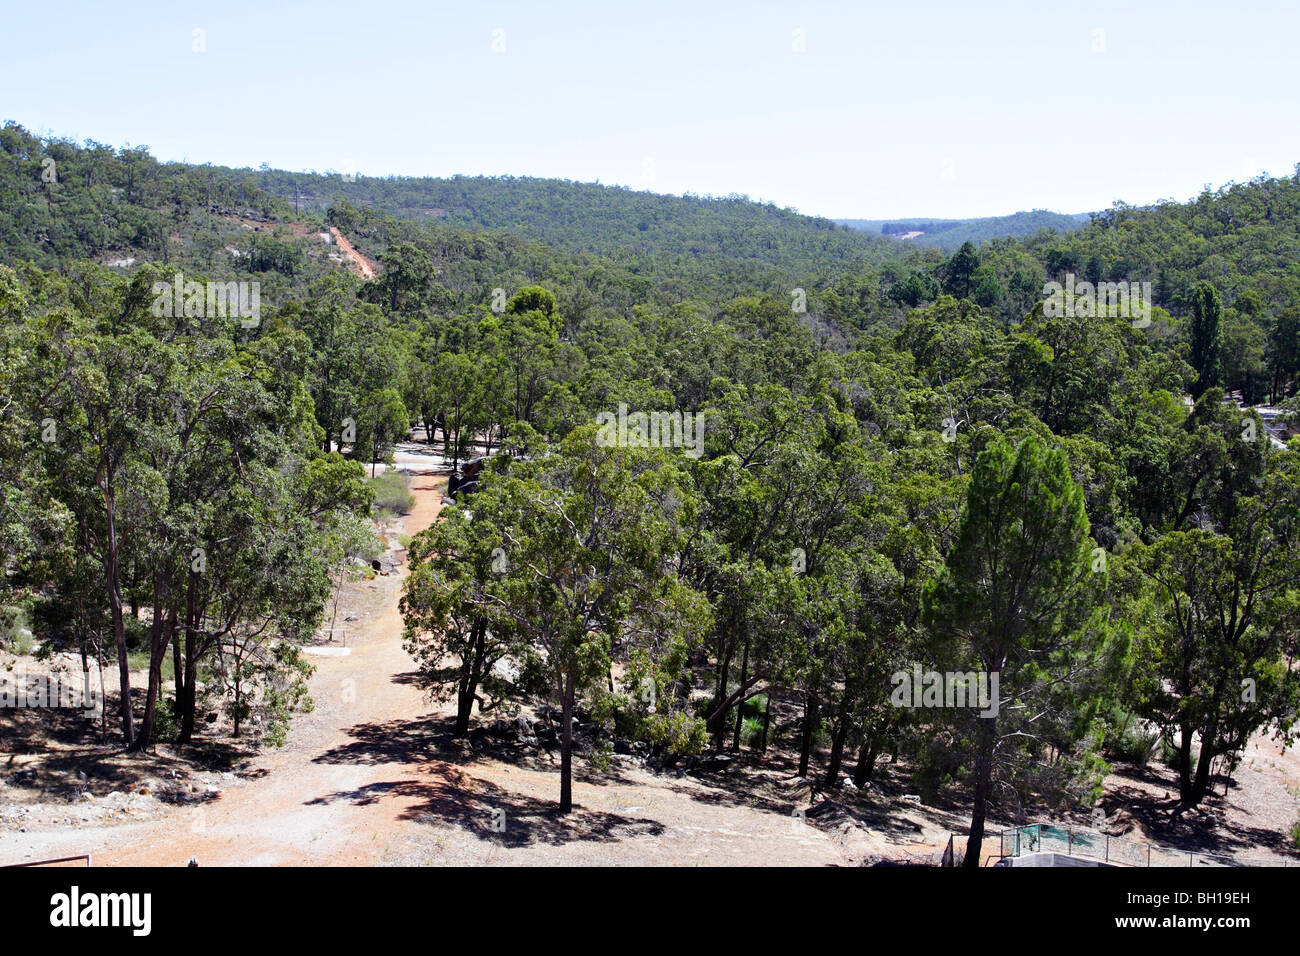 Forest near Mundaring Reservoir in Western Australia. Stock Photo